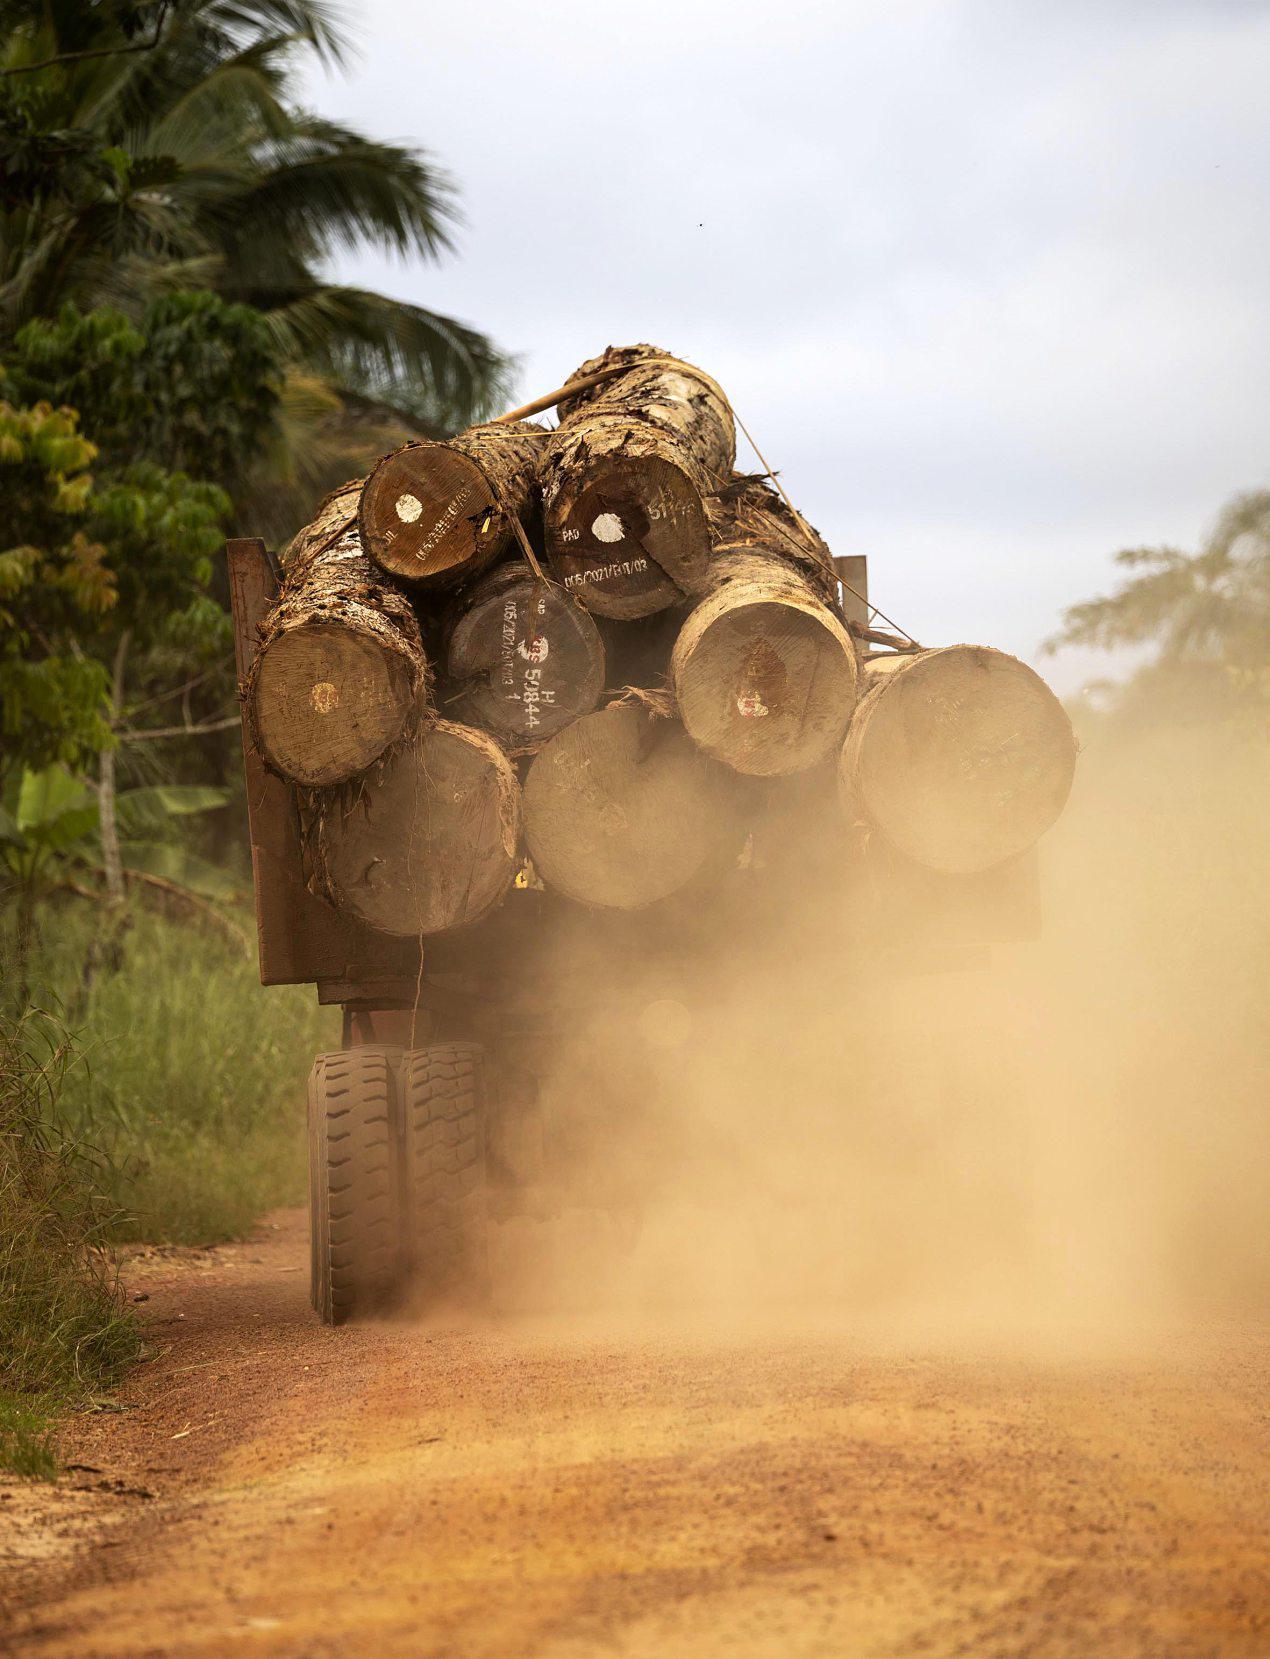 La forêt du bassin du Congo, deuxième «poumon vert» de la planète, est menacée par l’exploitation intensive.GWENN DUBOURTHOUMIEU